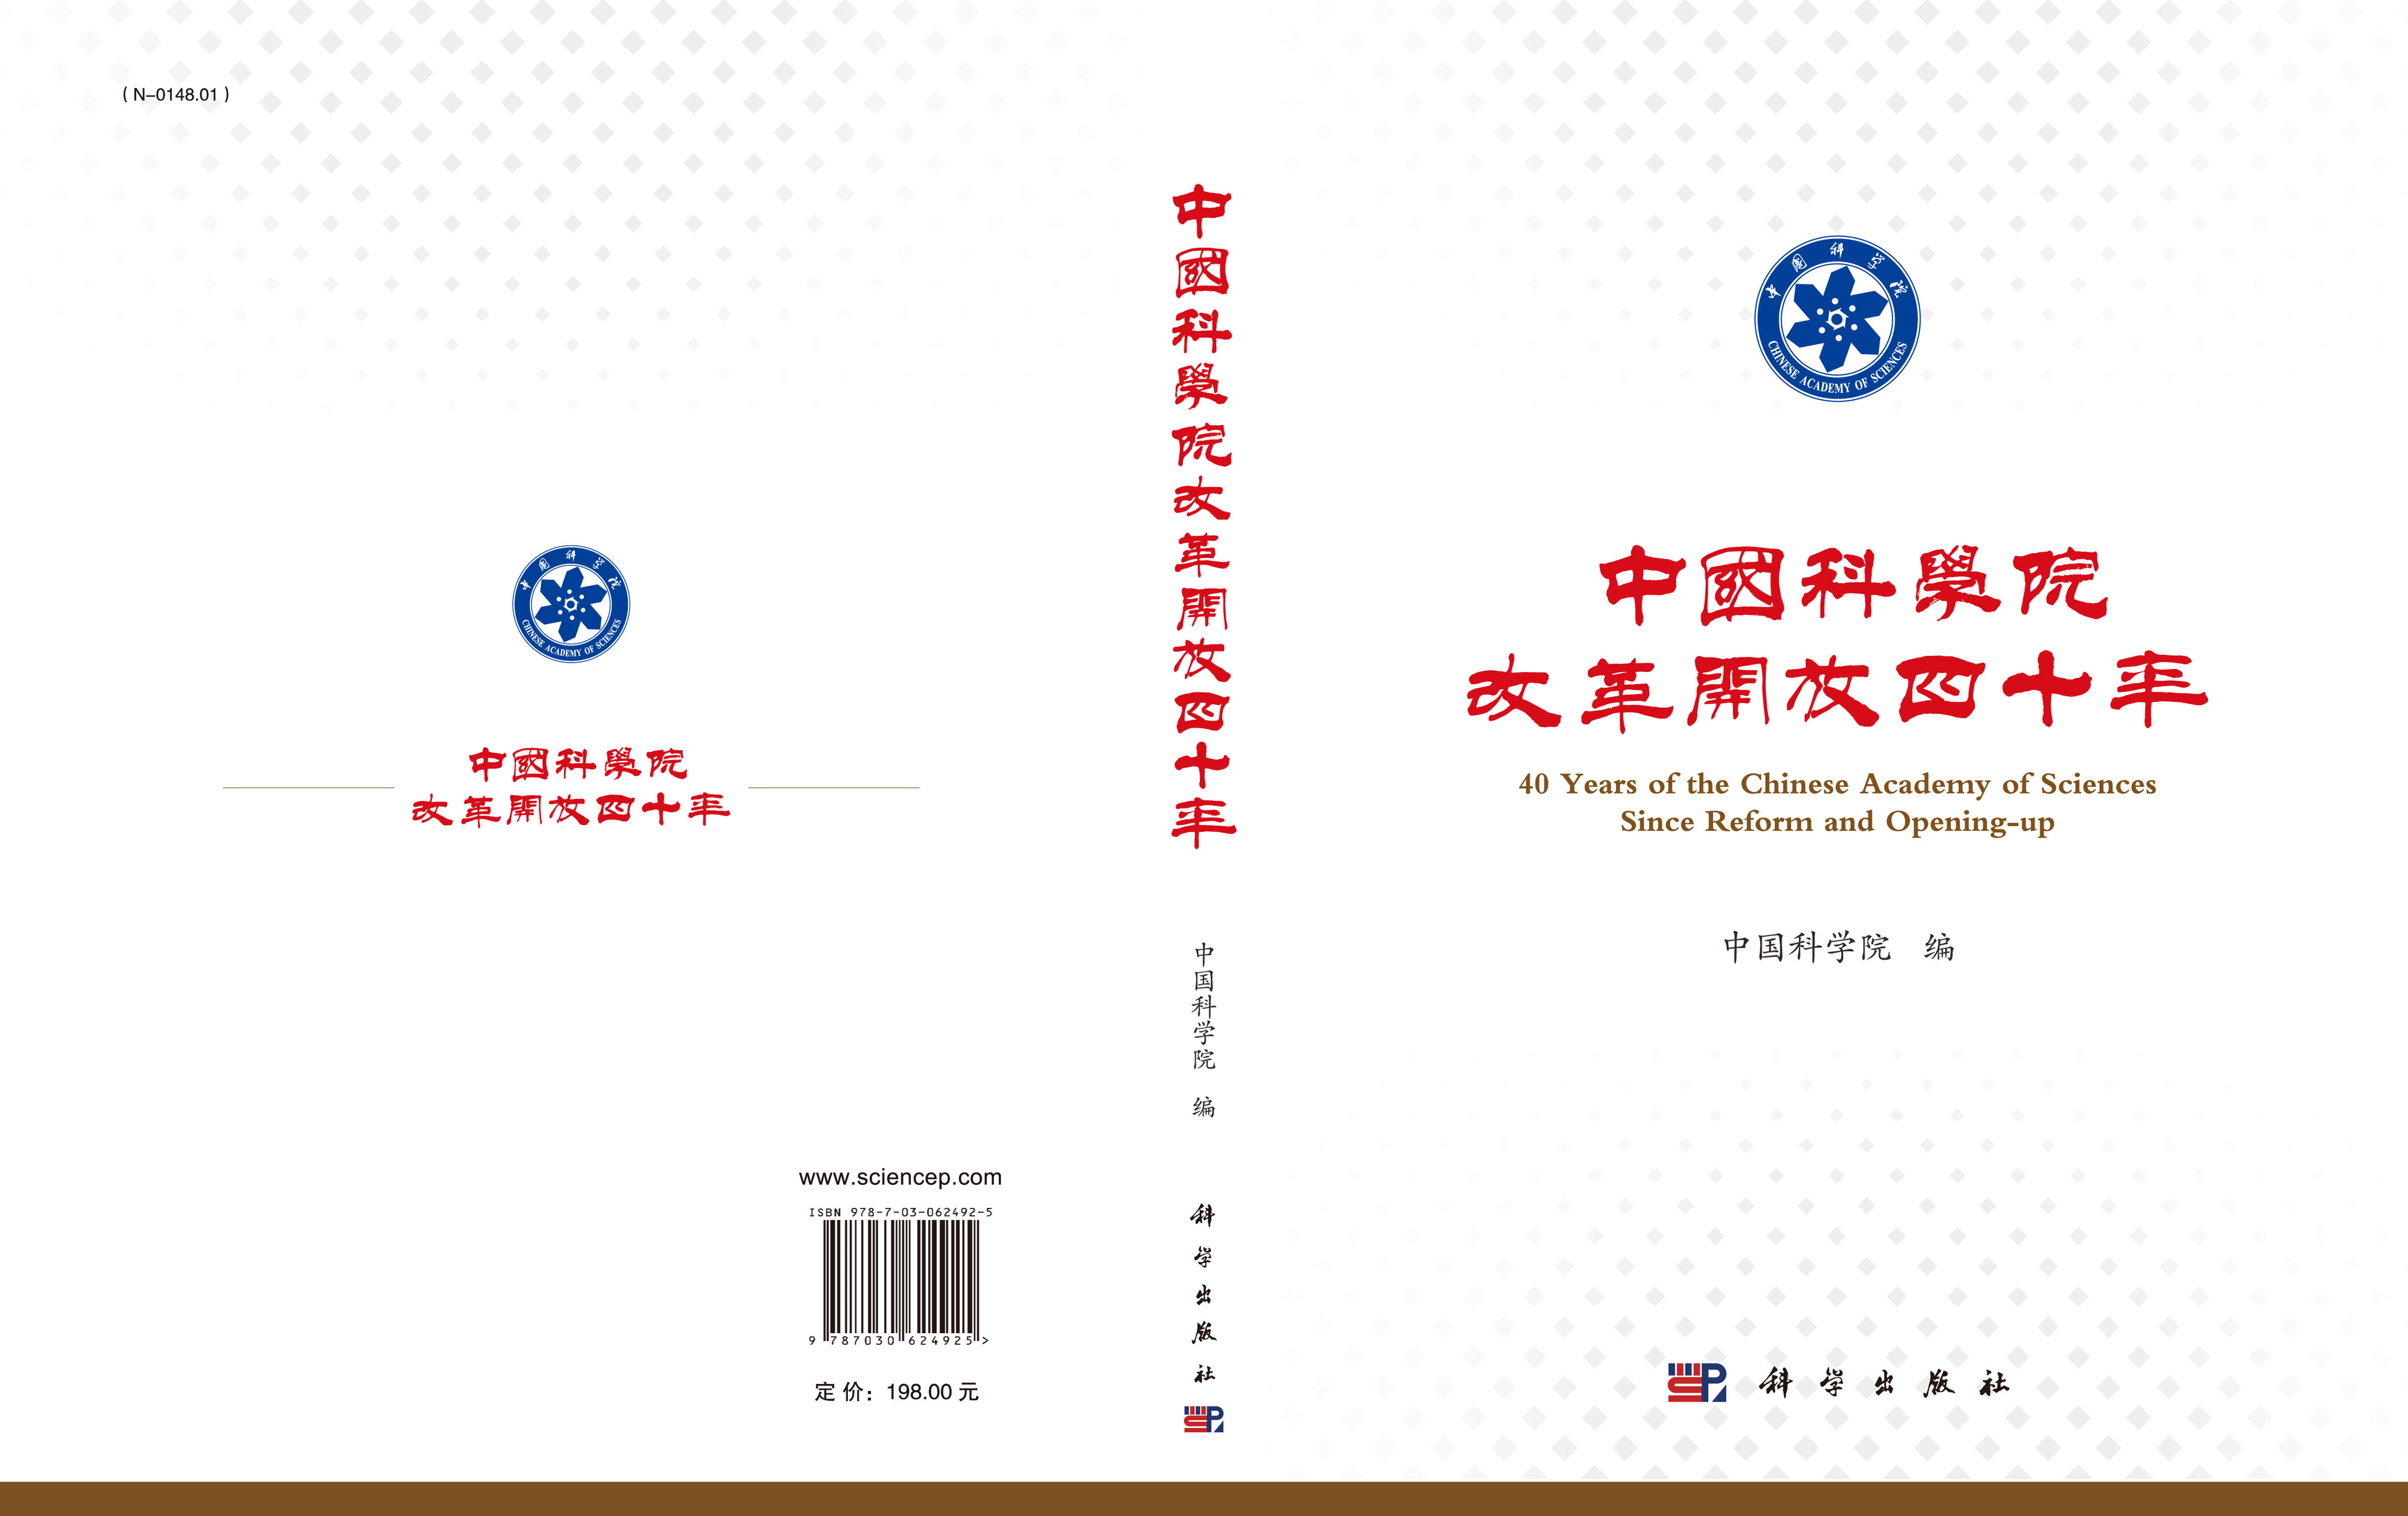 中国科学院改革开放四十年